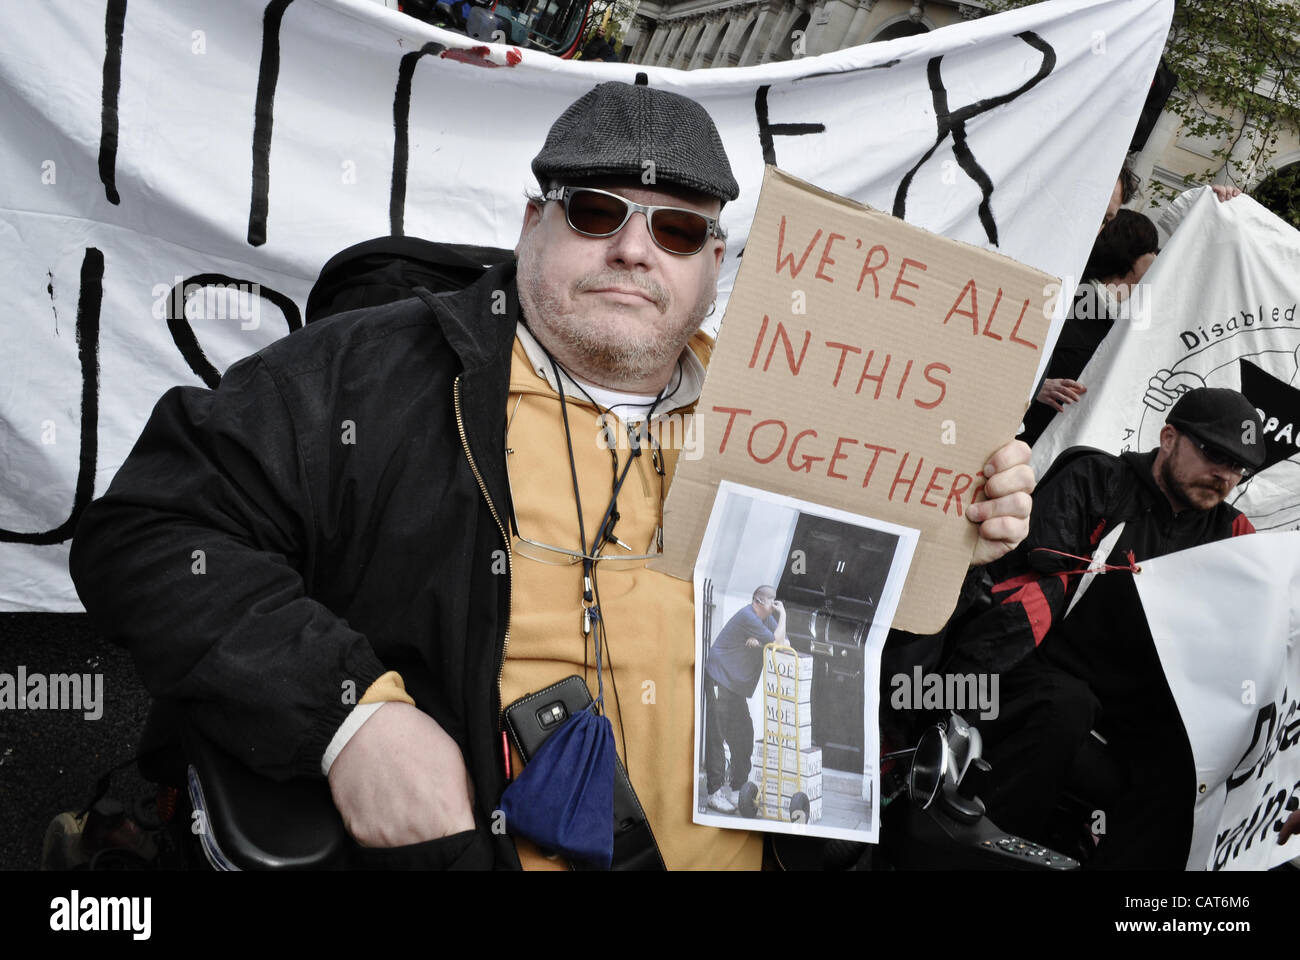 18.04.12, London, UK: ein behinderter Demonstrant hält ein Plakat und gehört zu einer Gruppe von Rollstuhlfahrern, die Straßen rund um Trafalgar Squrae blockieren. Der Protest war um Probleme von Menschen mit Behinderungen, in bestimmte Änderung auf Leistungen bei Invalidität zu markieren. Stockfoto